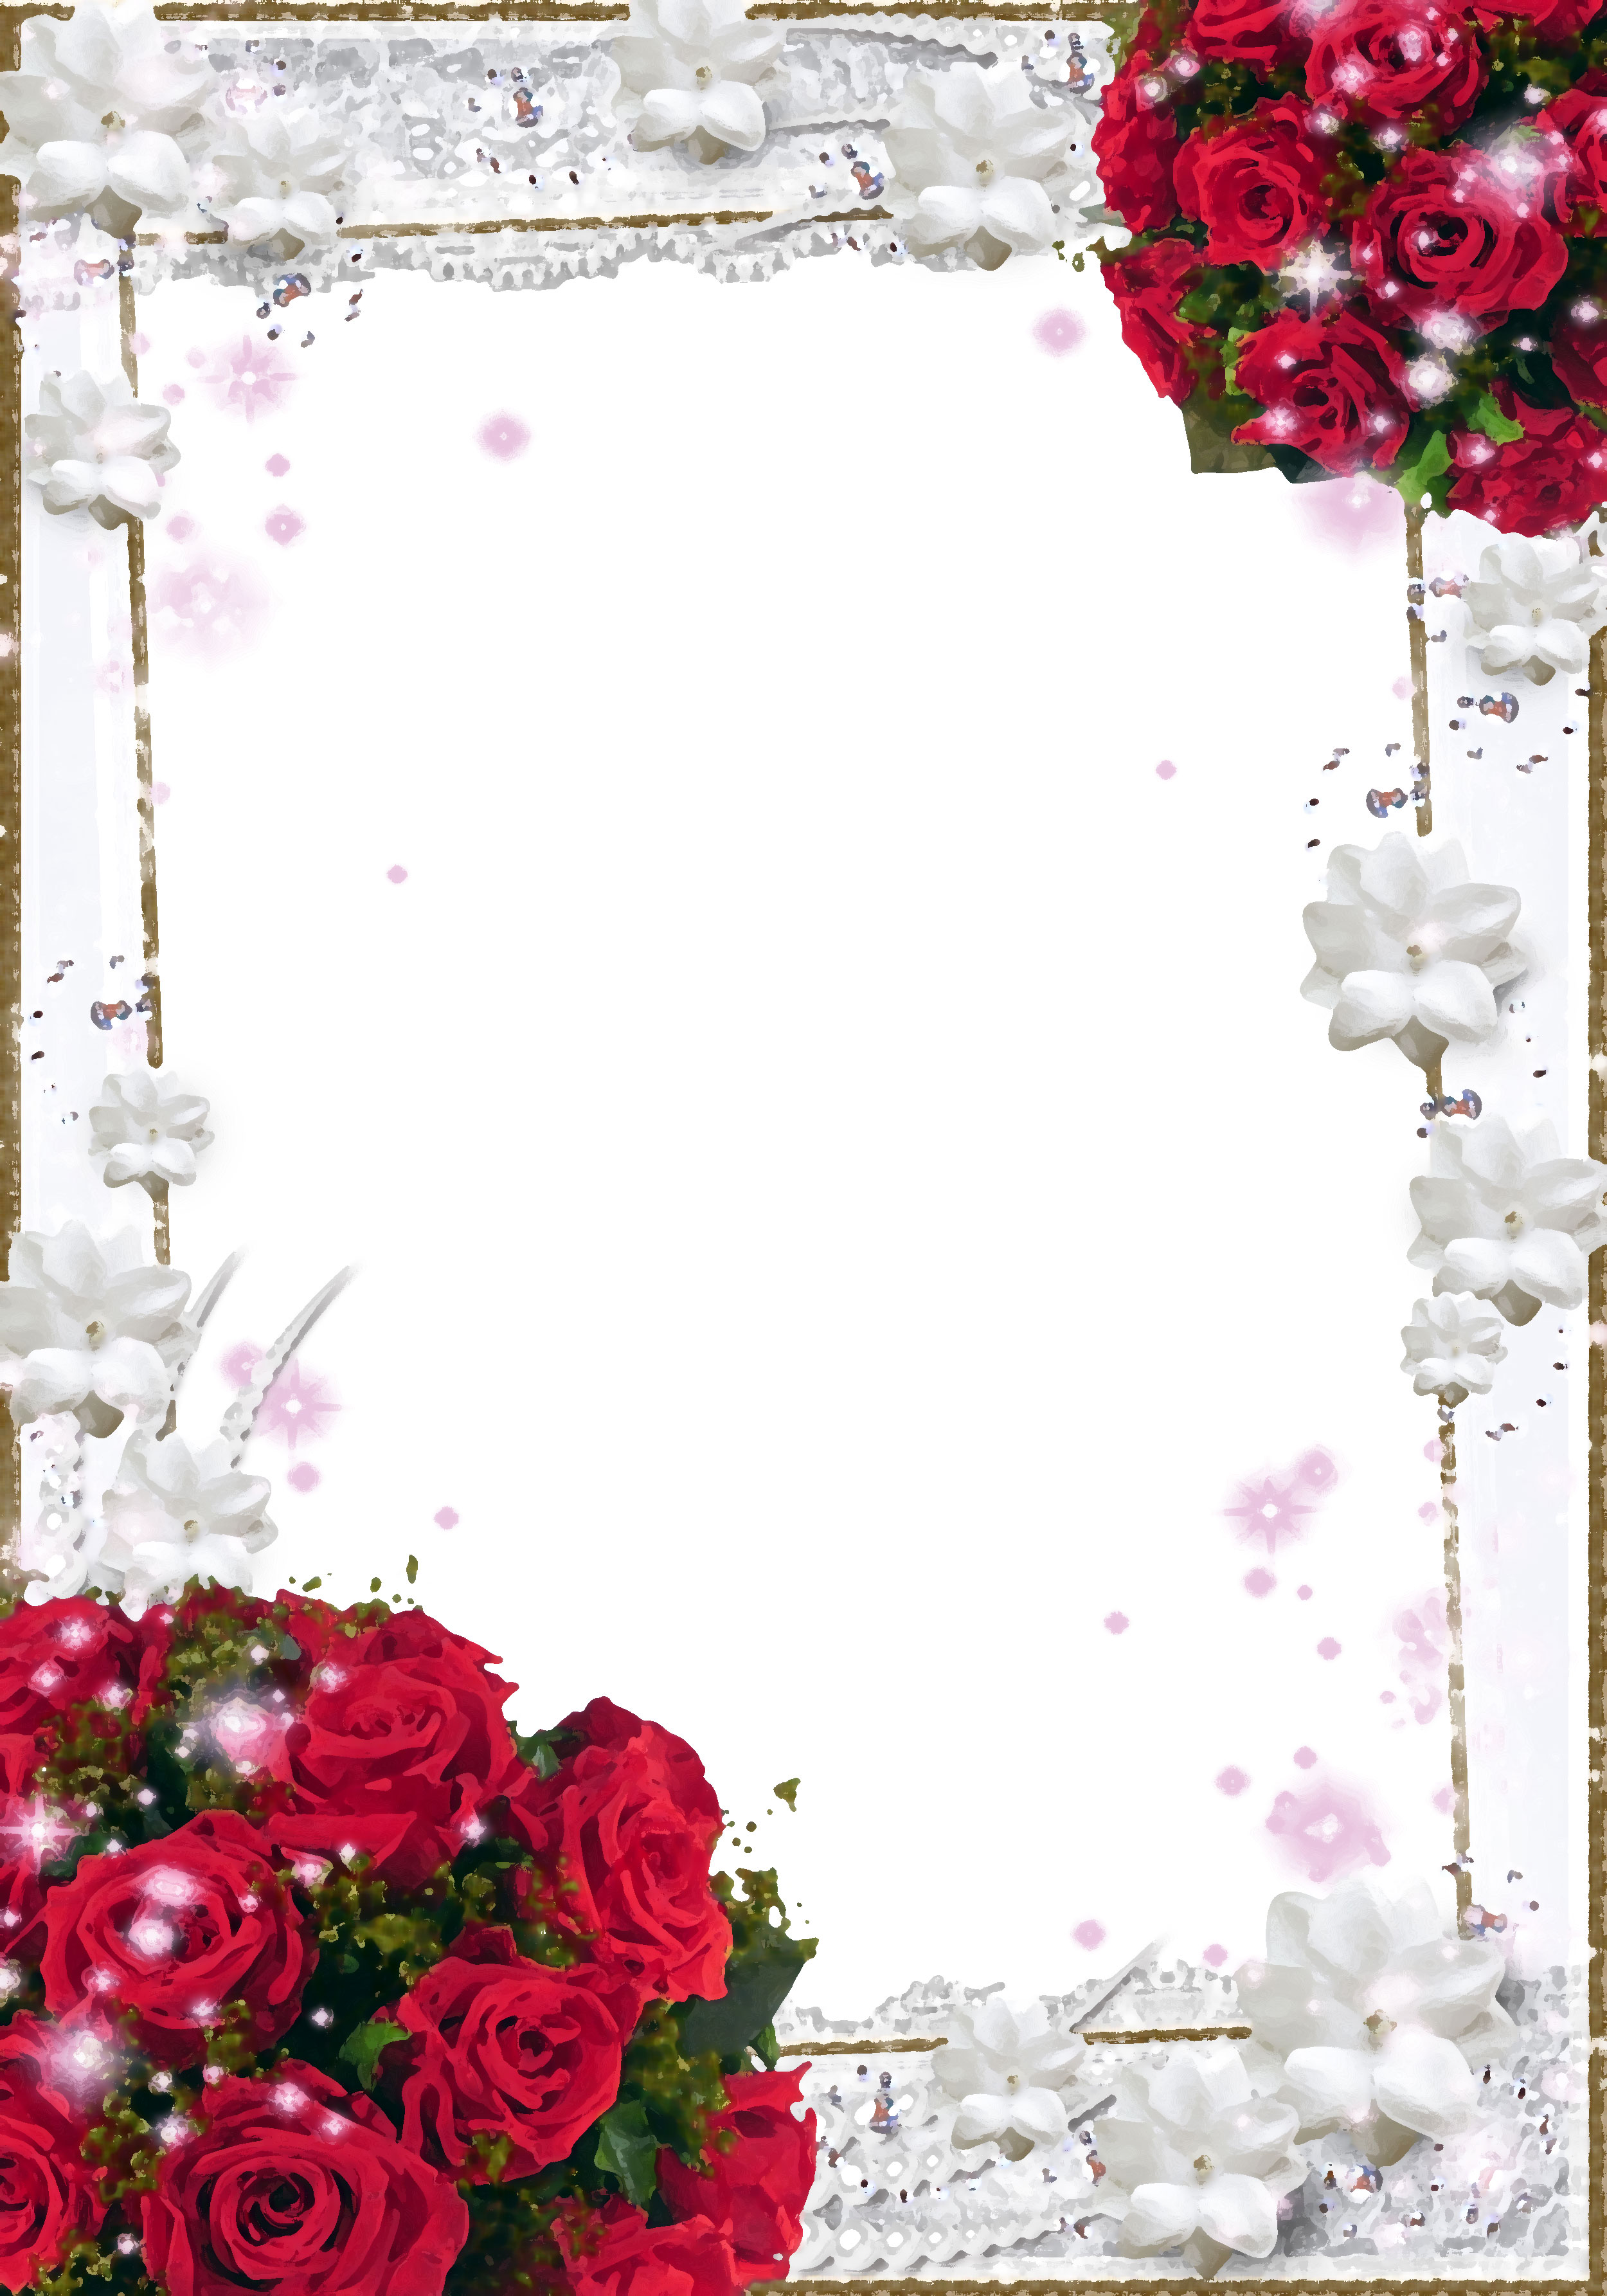 赤い花のイラスト フリー素材 背景 壁紙no 946 赤バラの束 真珠 白